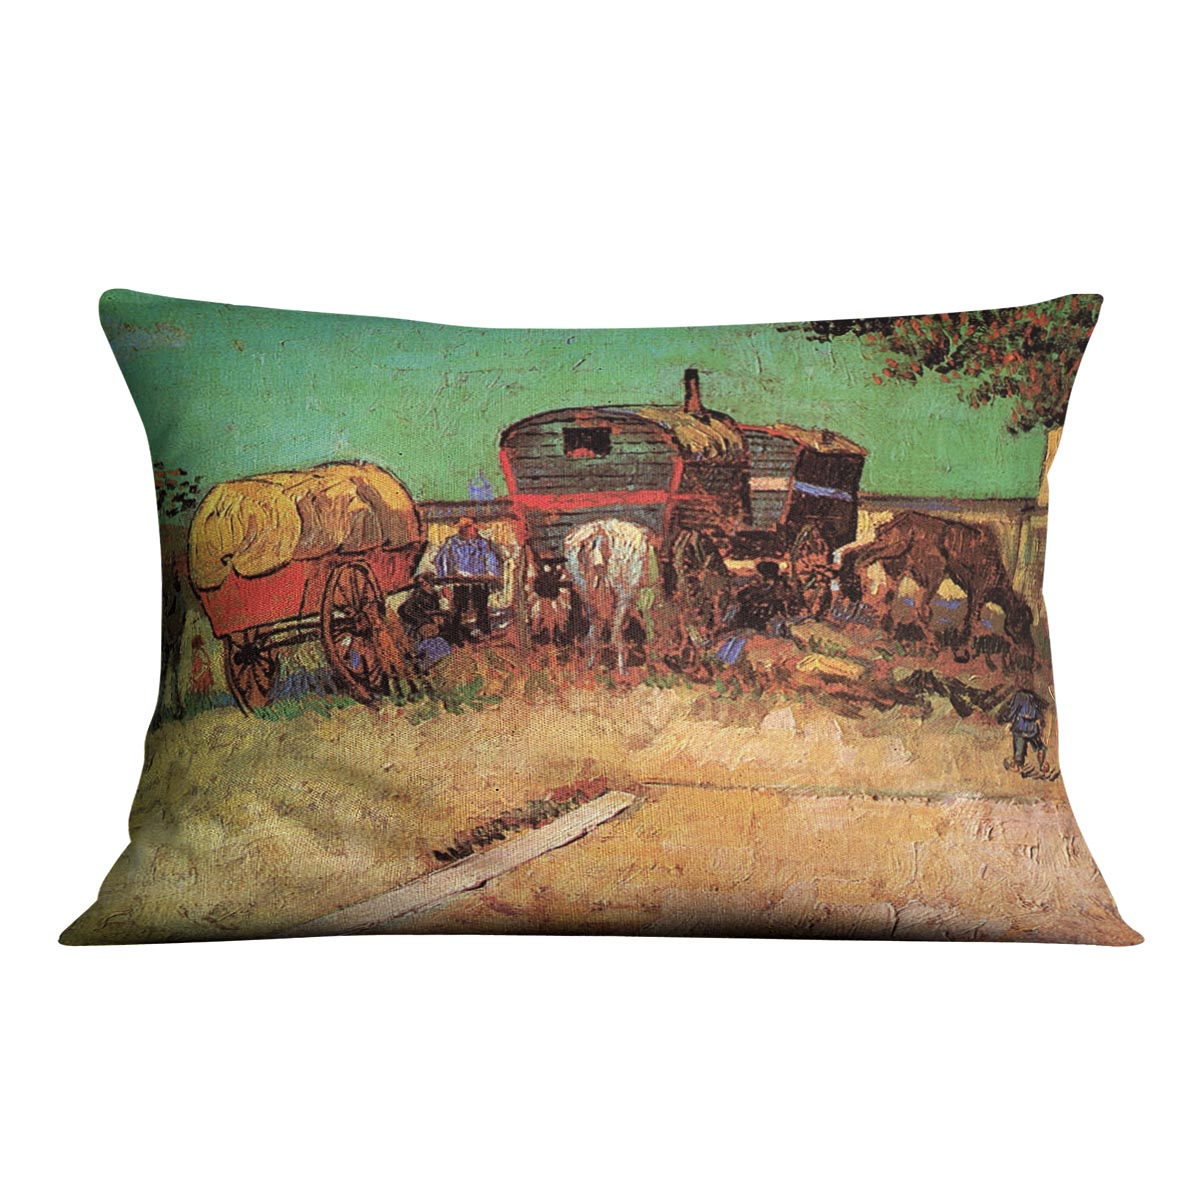 Encampment of Gypsies with Caravans by Van Gogh Cushion